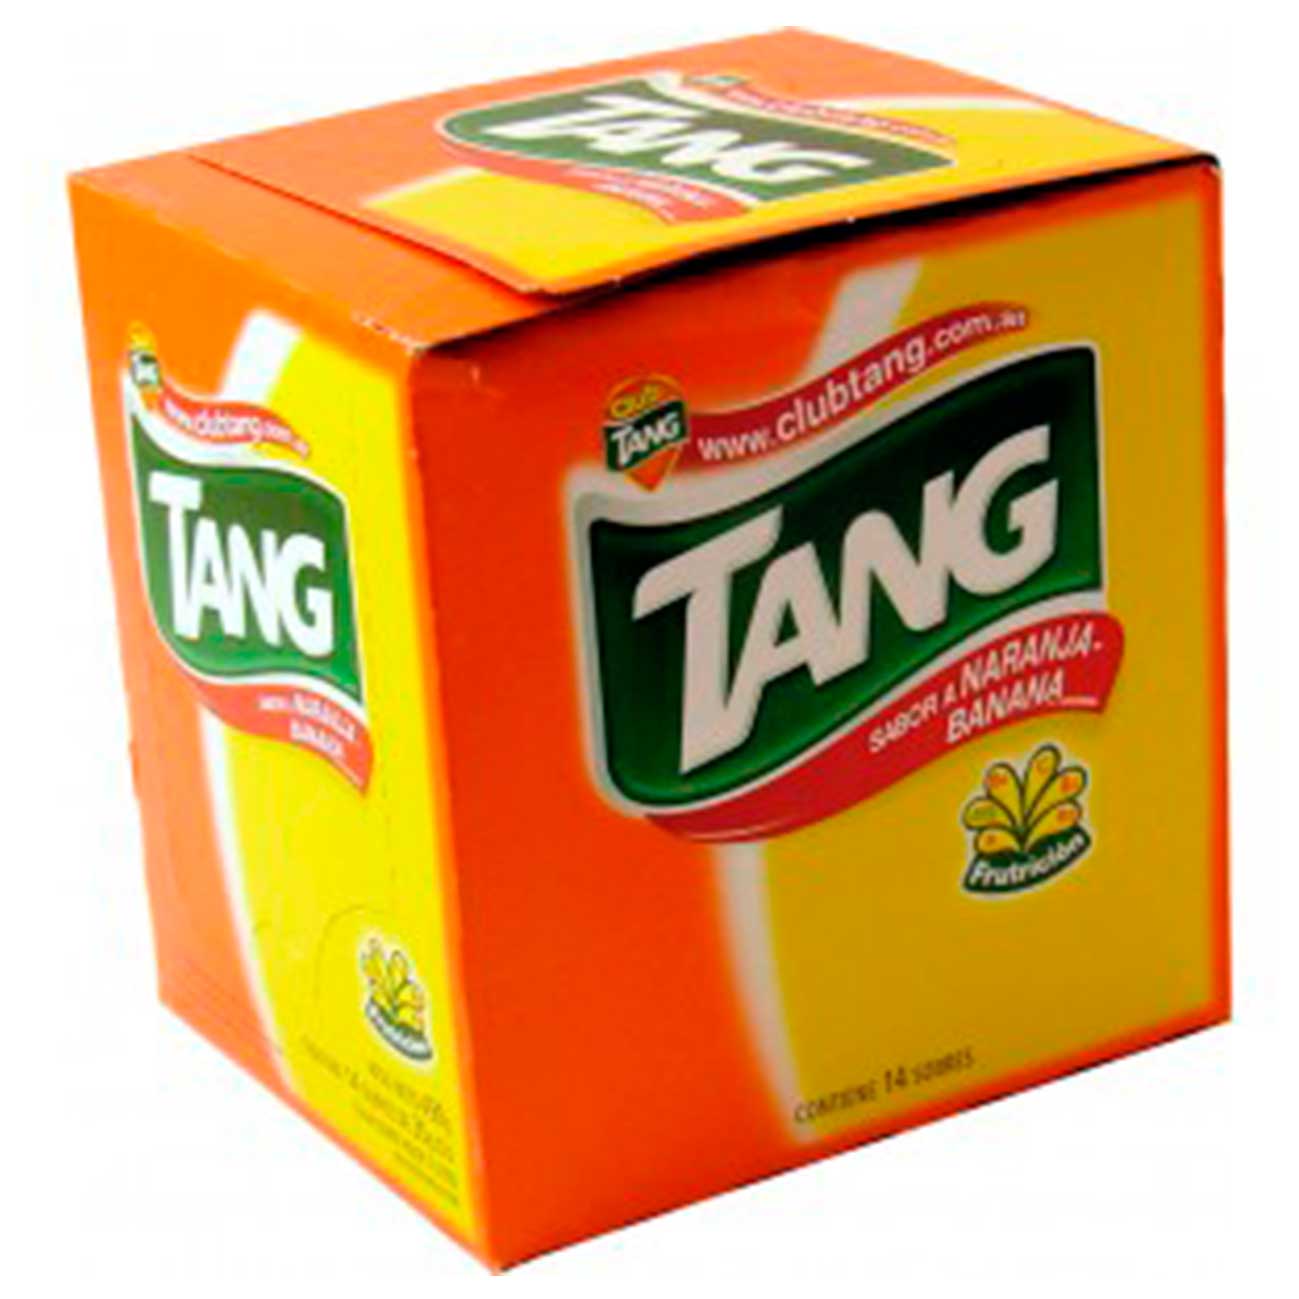 Jugo en polvo naranja banana Tang.